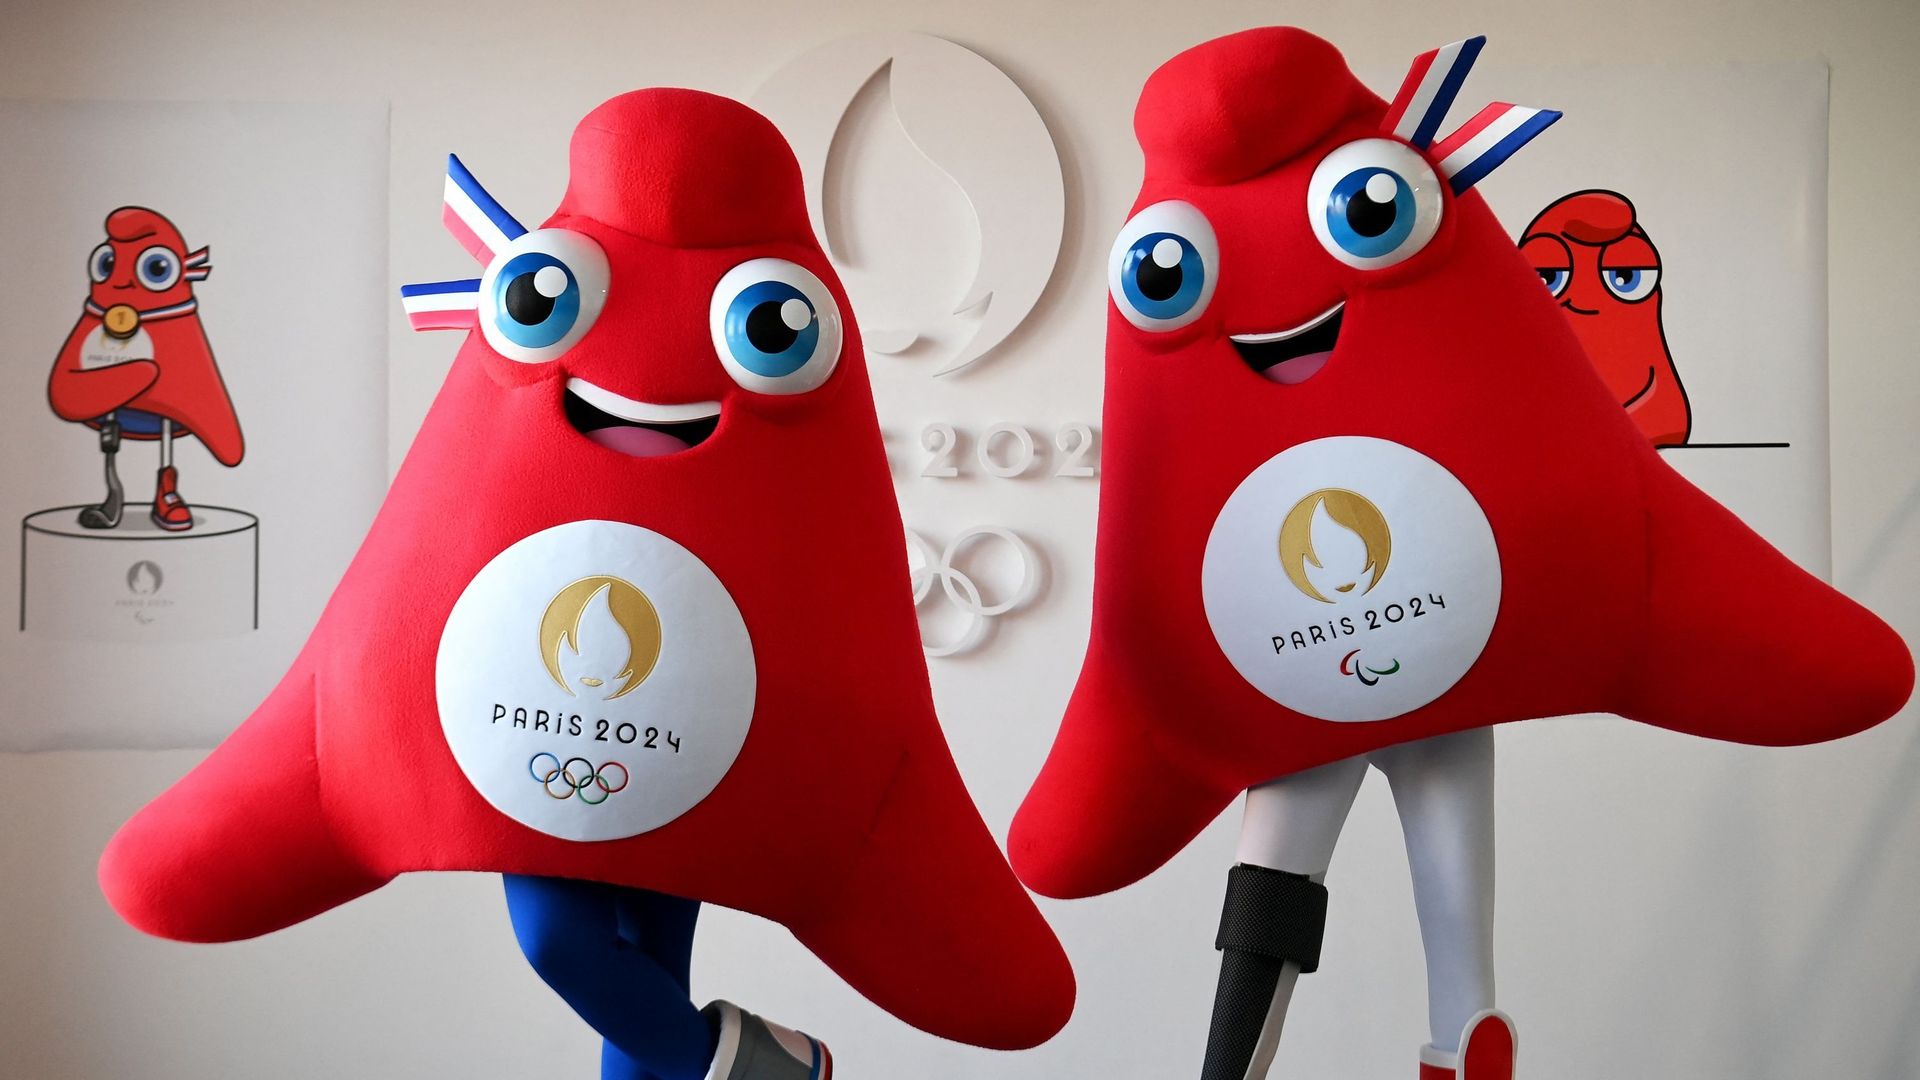 Les JO de Paris 2024 ont dévoilé lundi leurs mascottes : deux bonnets phrygiens dénommés "Phryges", un symbole républicain pur jus pour incarner la peluche emblème de l’édition olympique française.